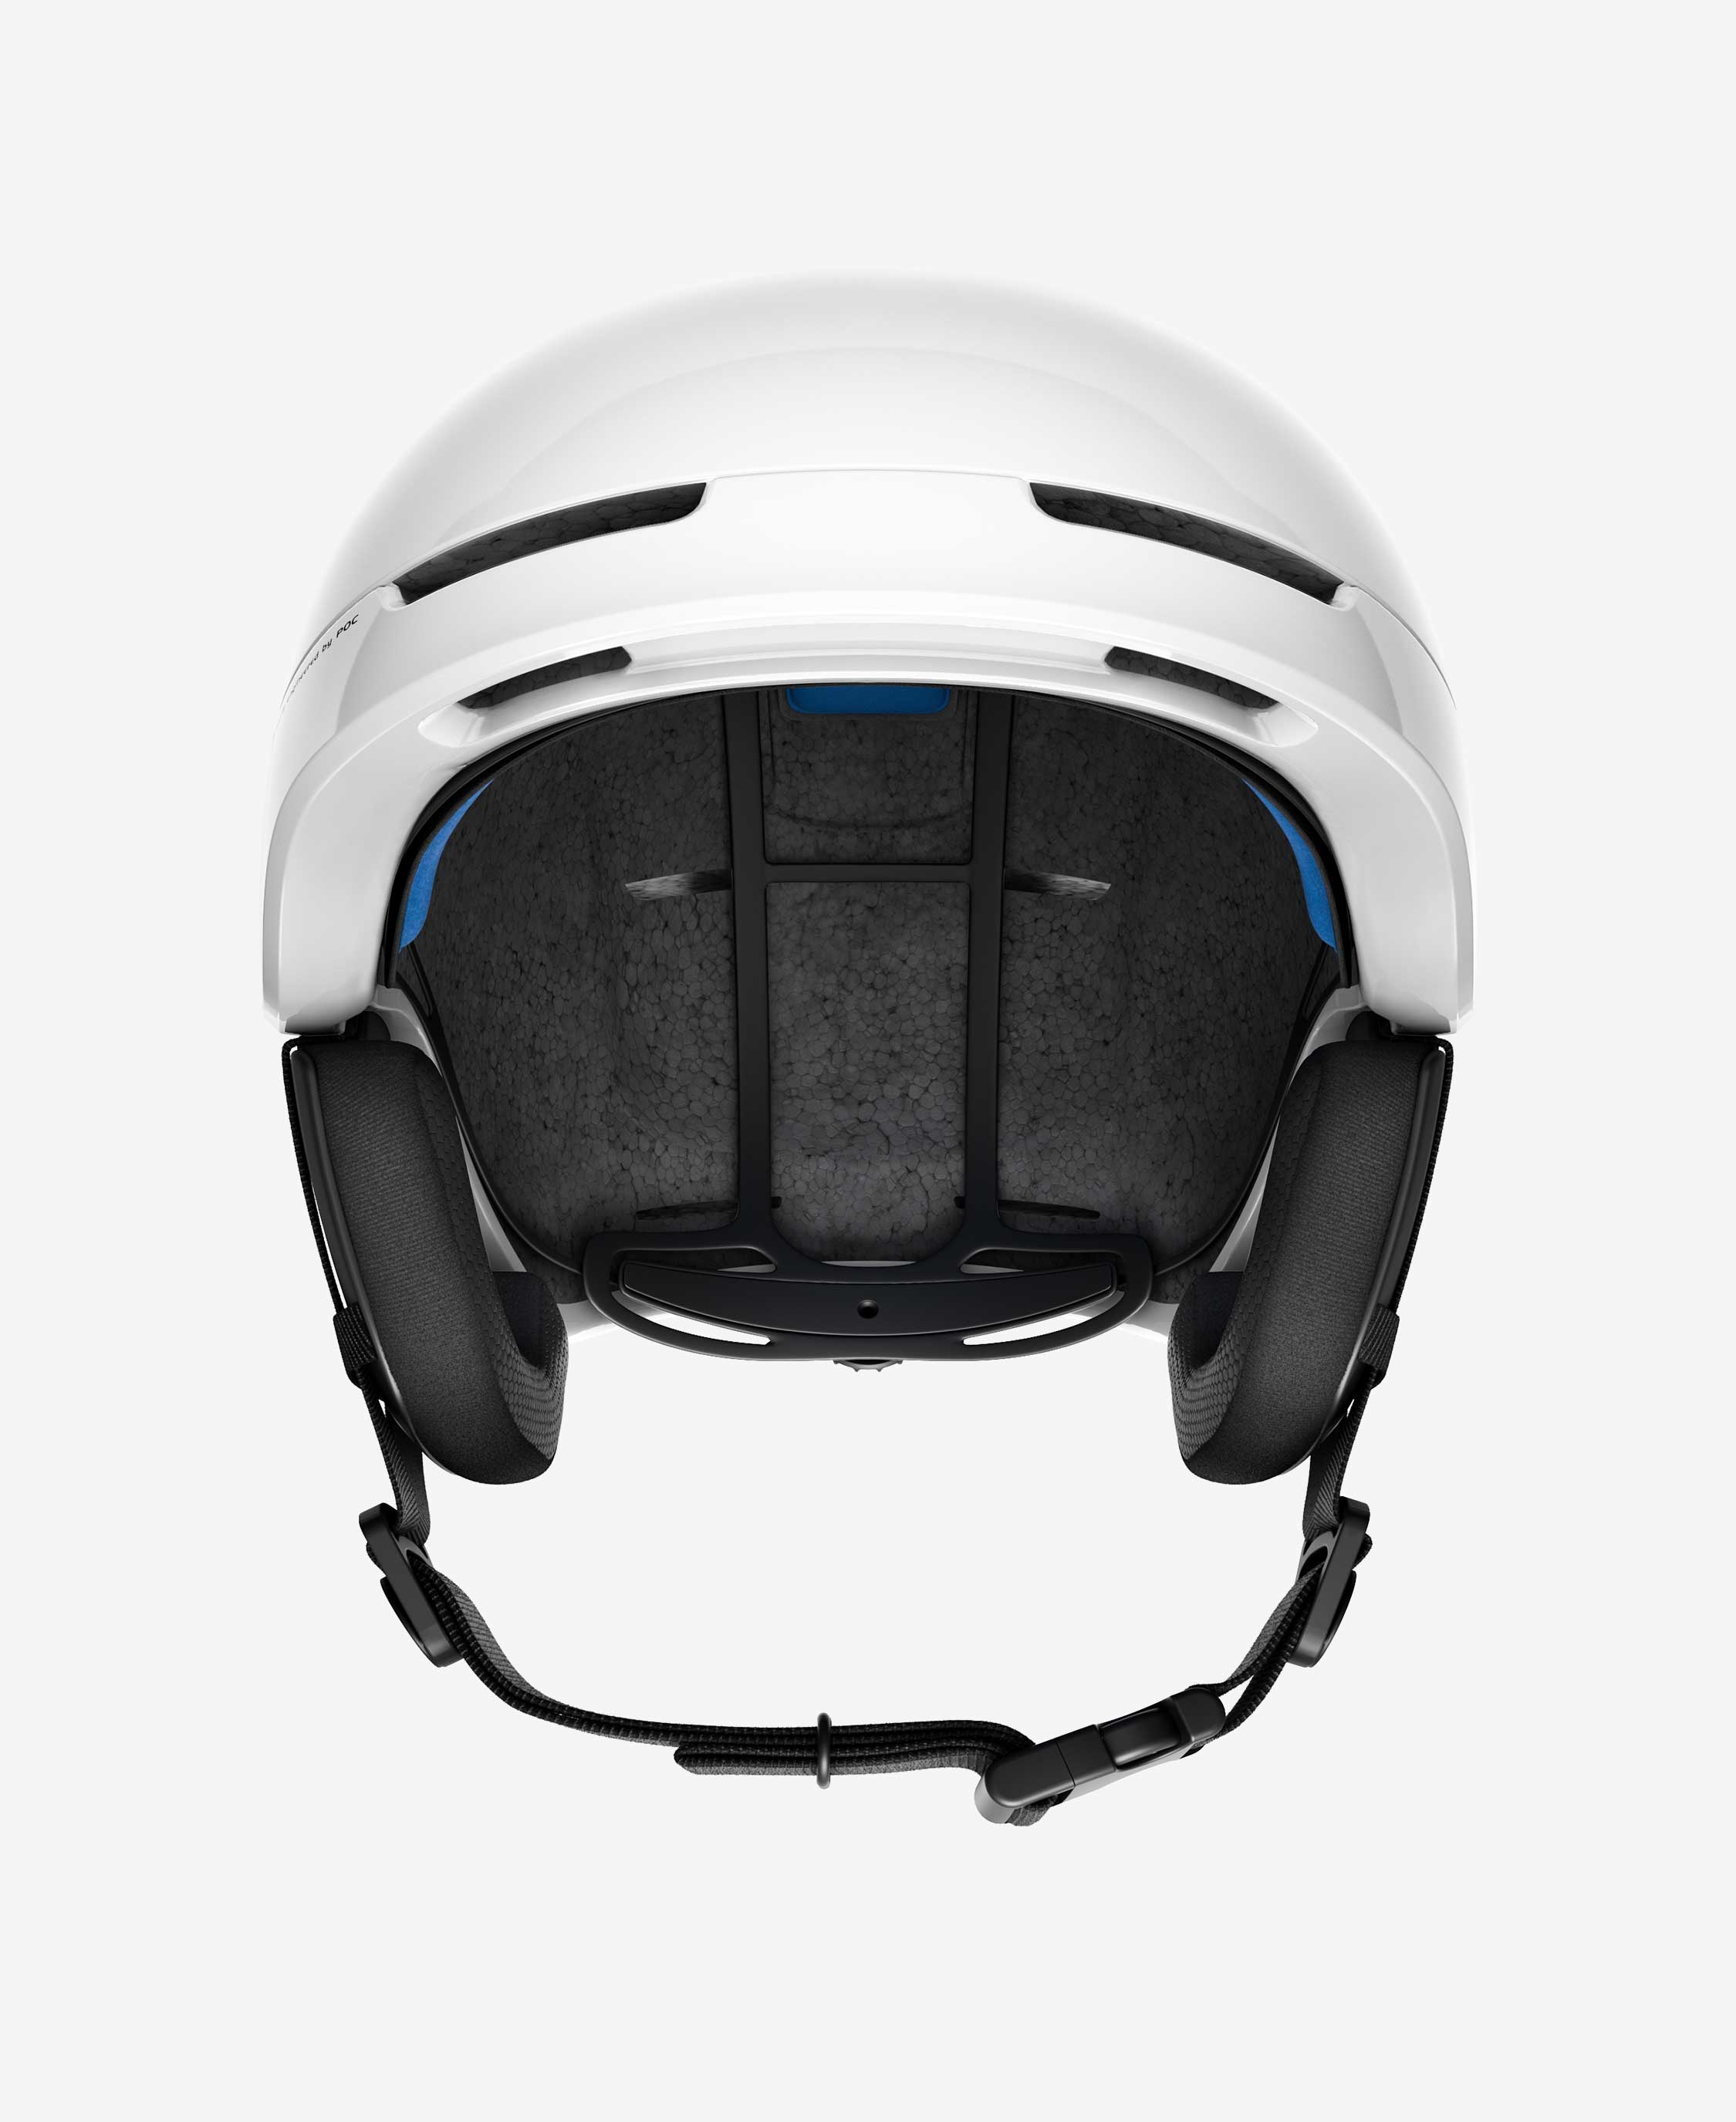 Ski Helmet - Obex Spin | POC | BOTËGHES LAGAZOI